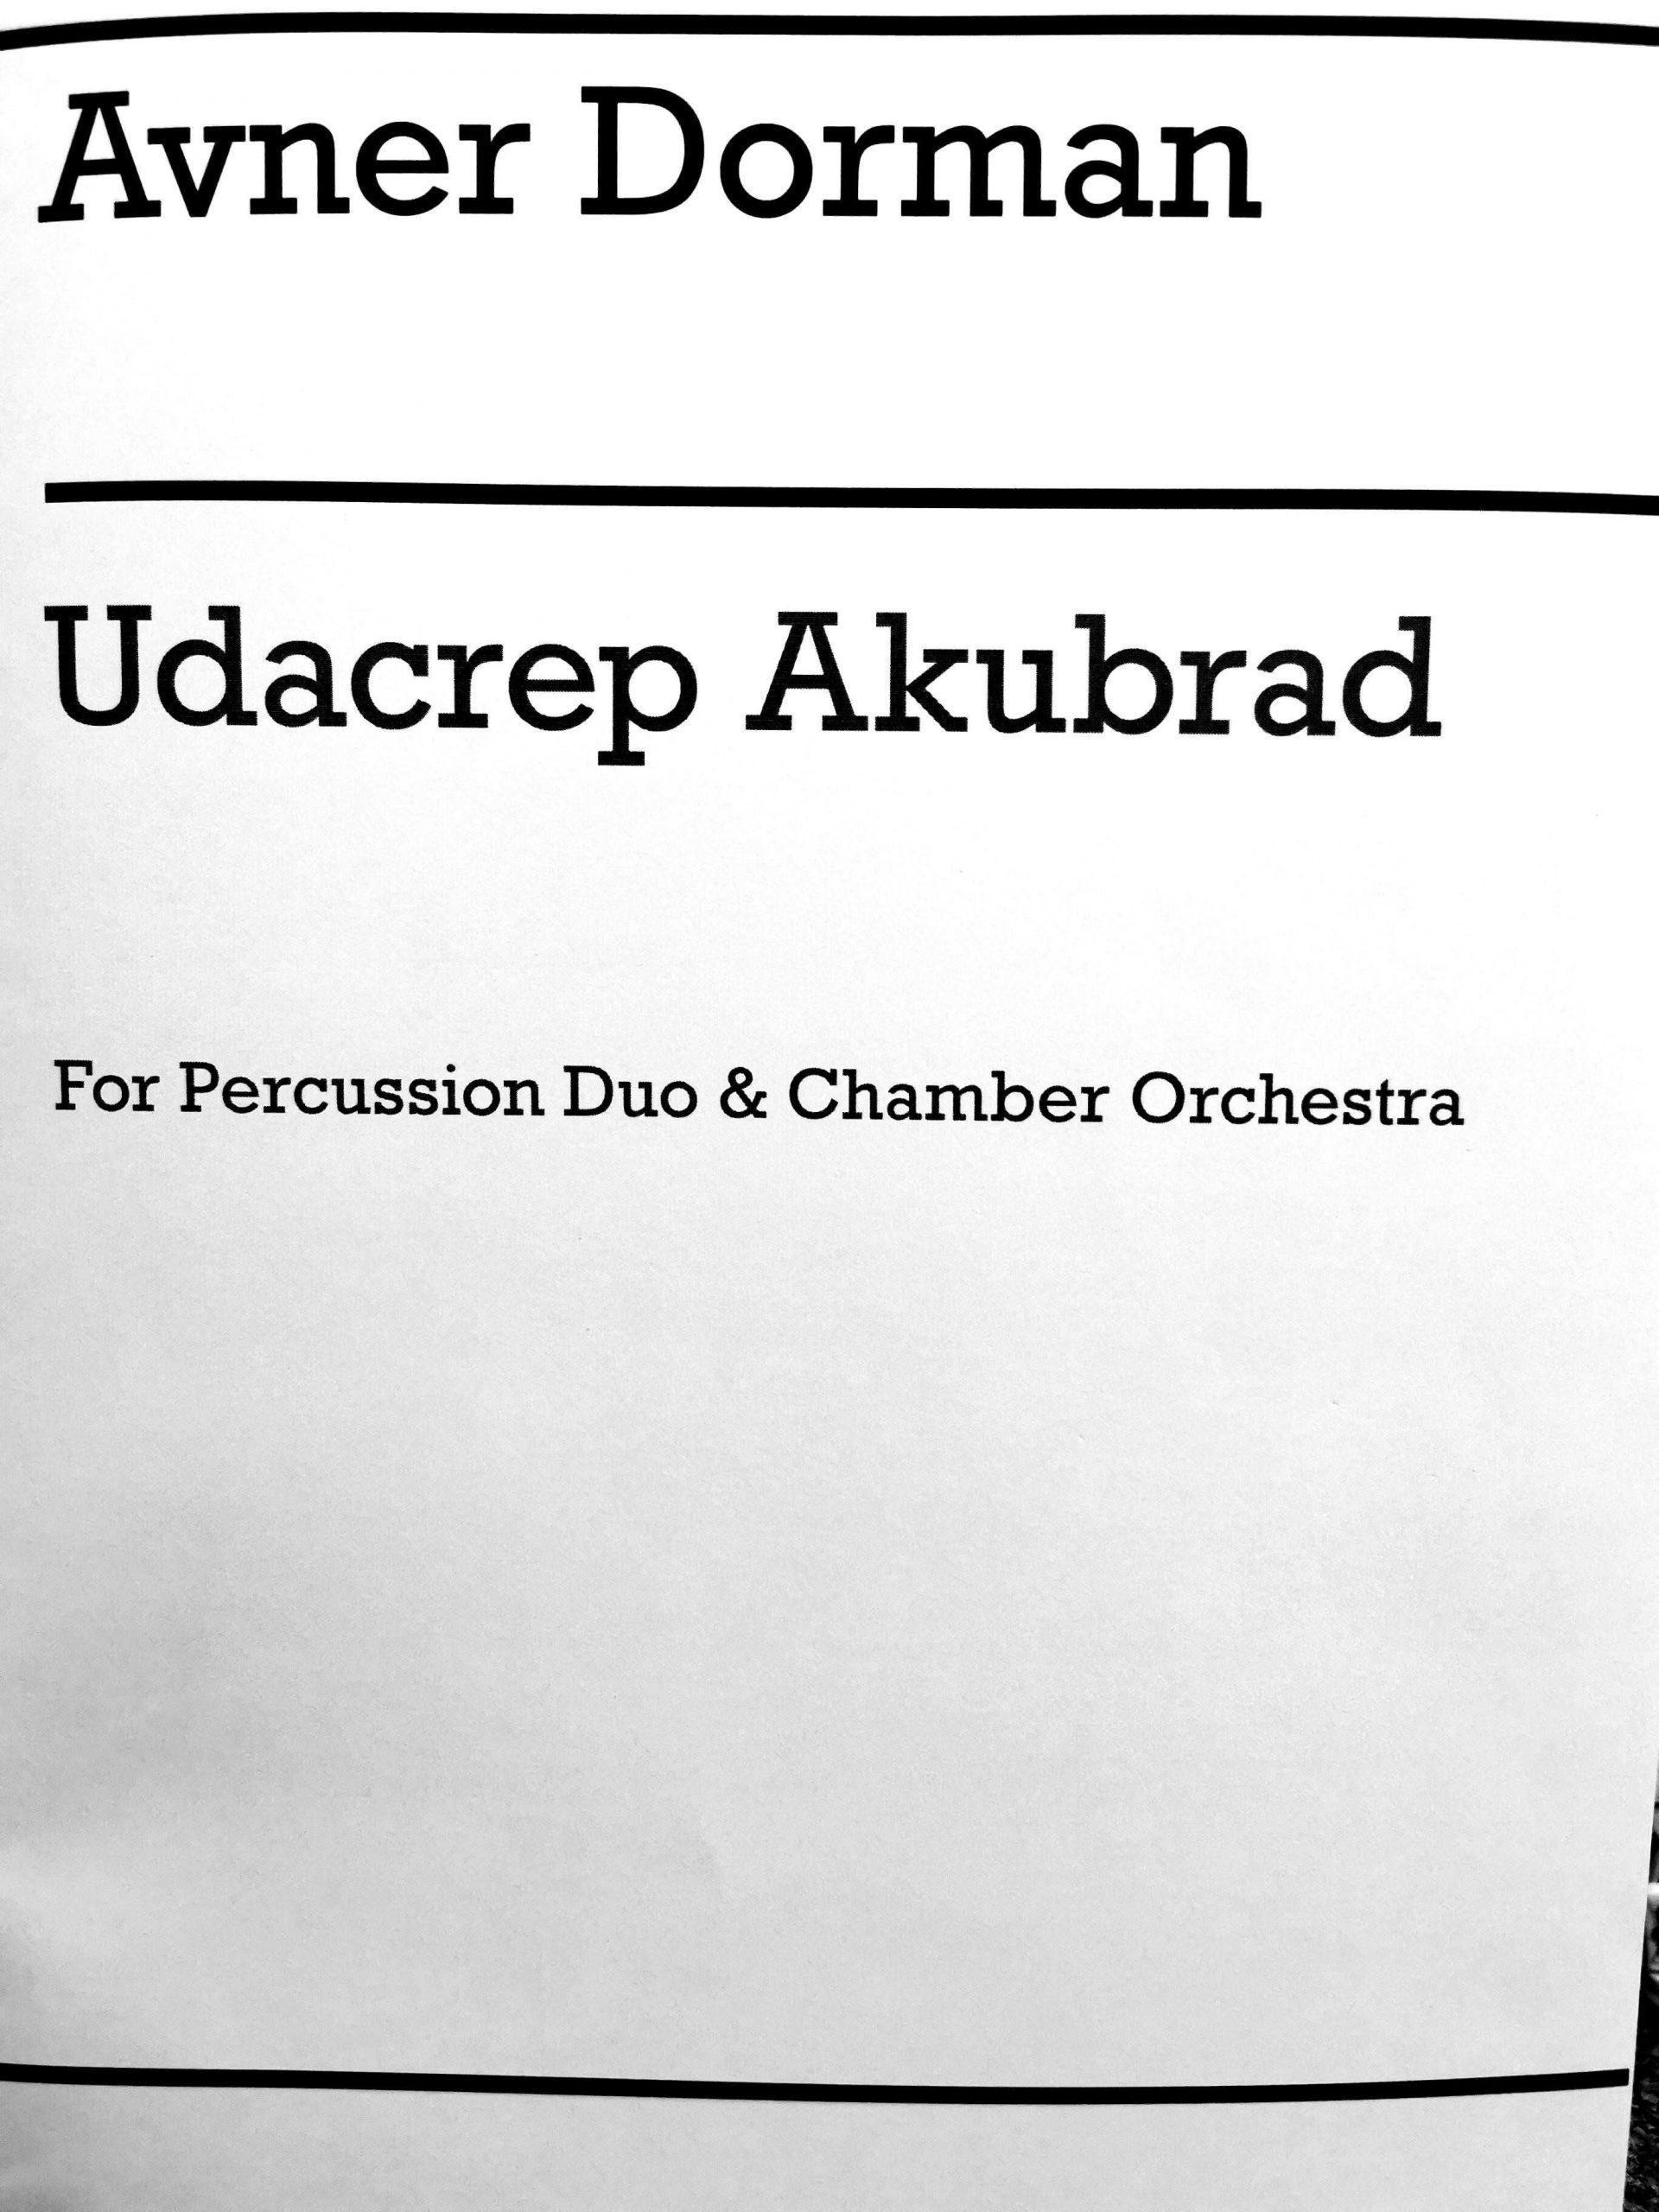 Udacrep Akubrad by Avner Dorman